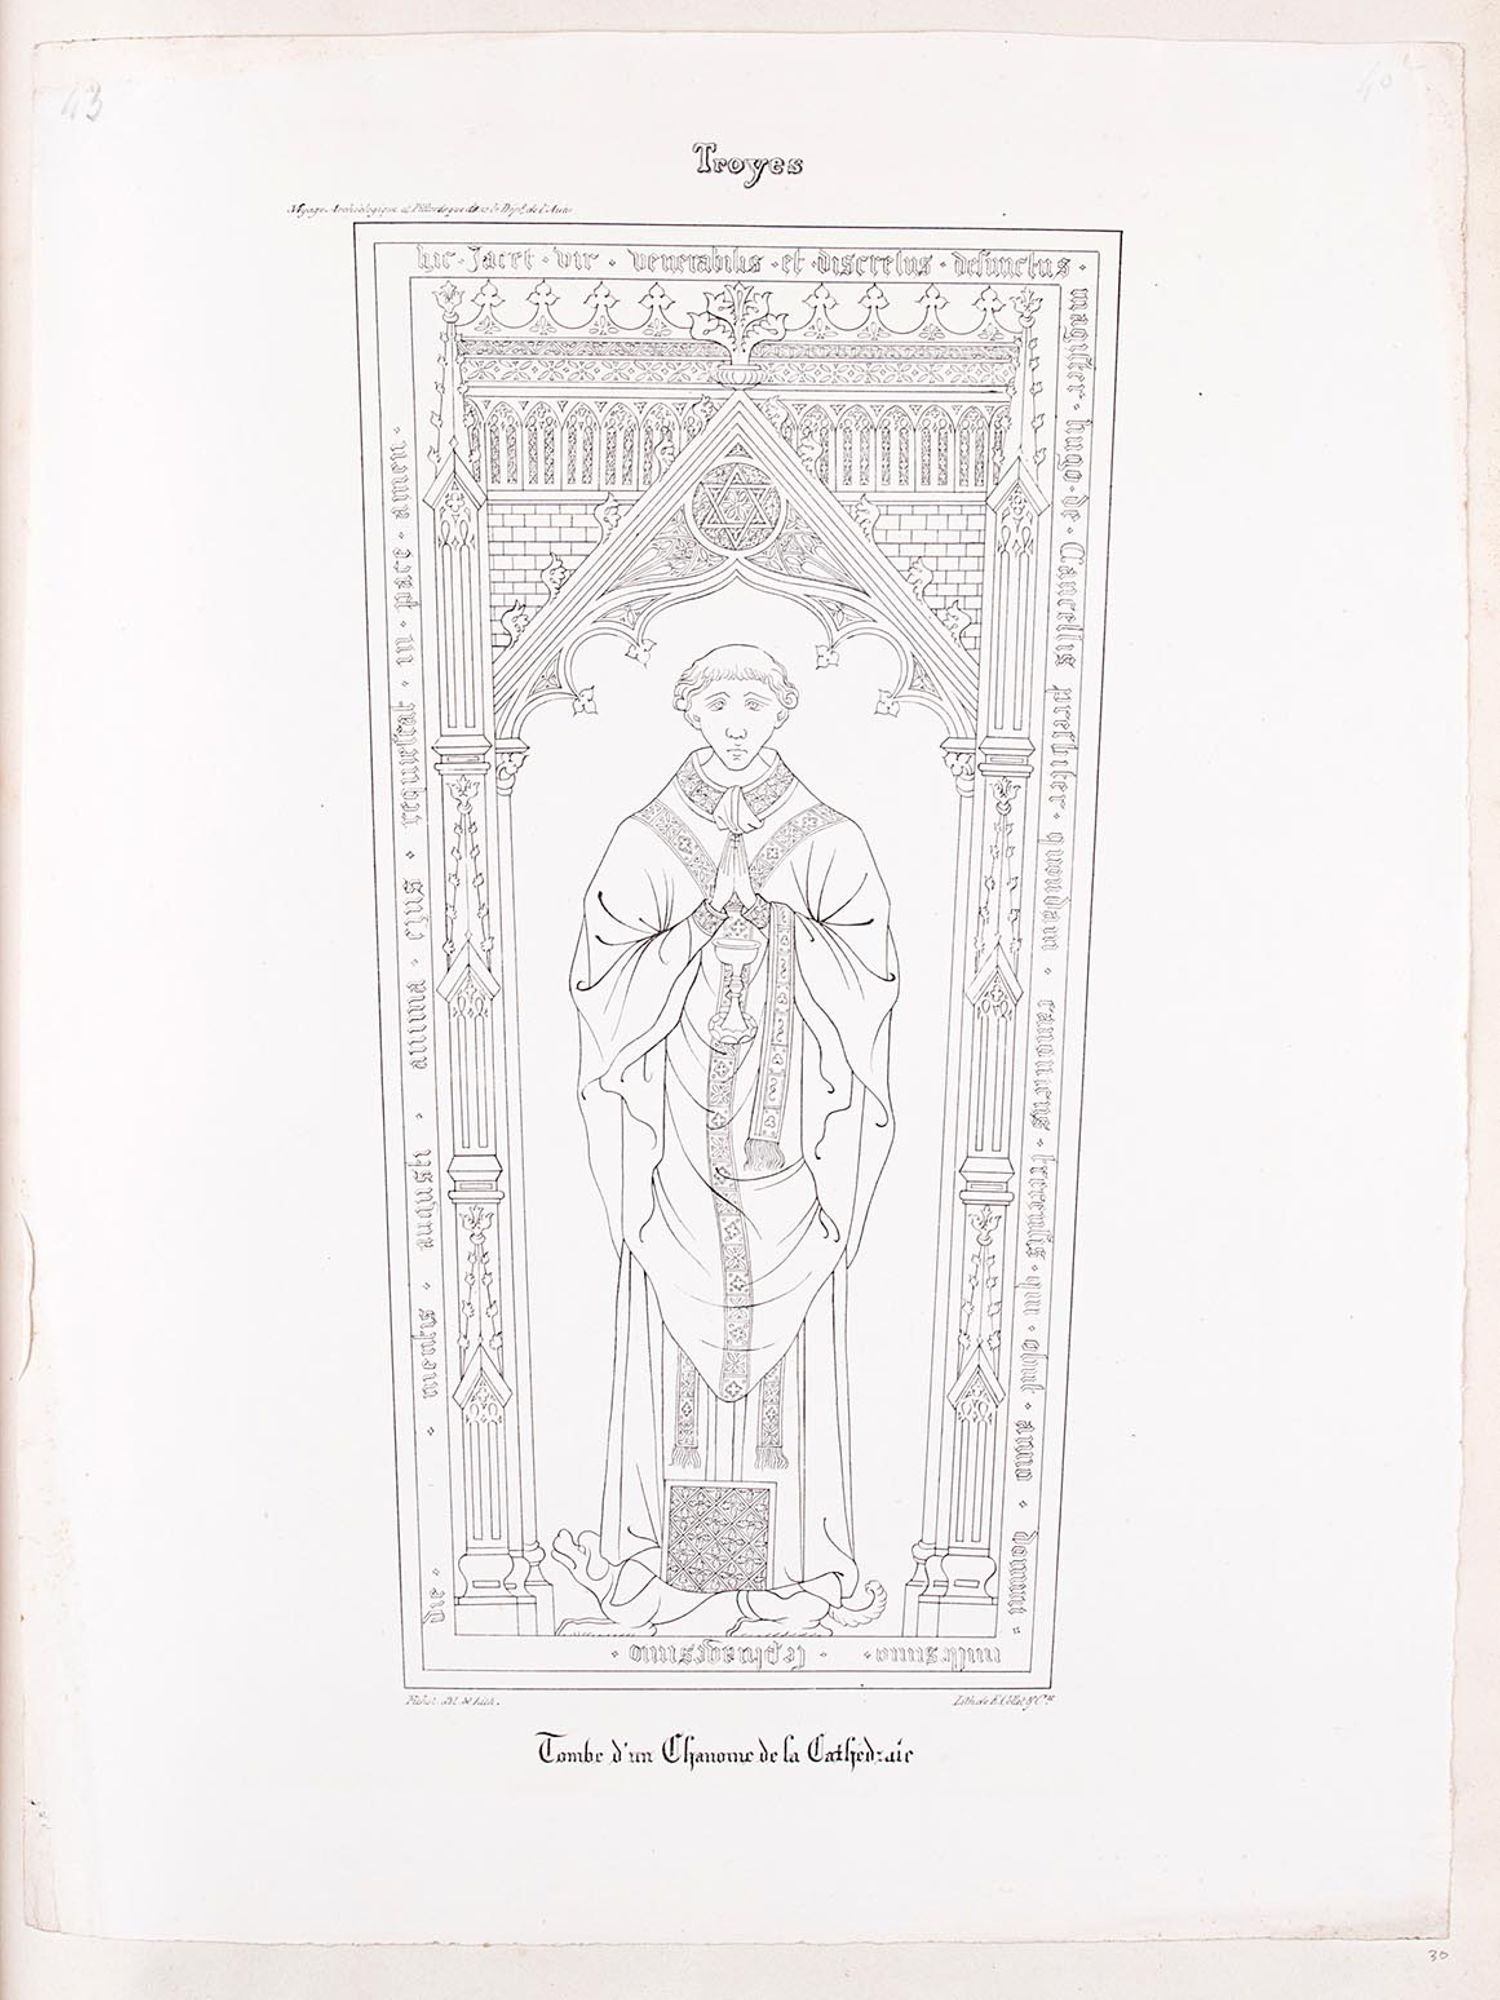 Lithographie. « Tombe d'un chanoine de la cathédrale », extrait du Voyage Archéologique et Pittoresque dans le Département de l'Aube et dans l'Ancien Diocèse de Troyes, Troyes, 1837.